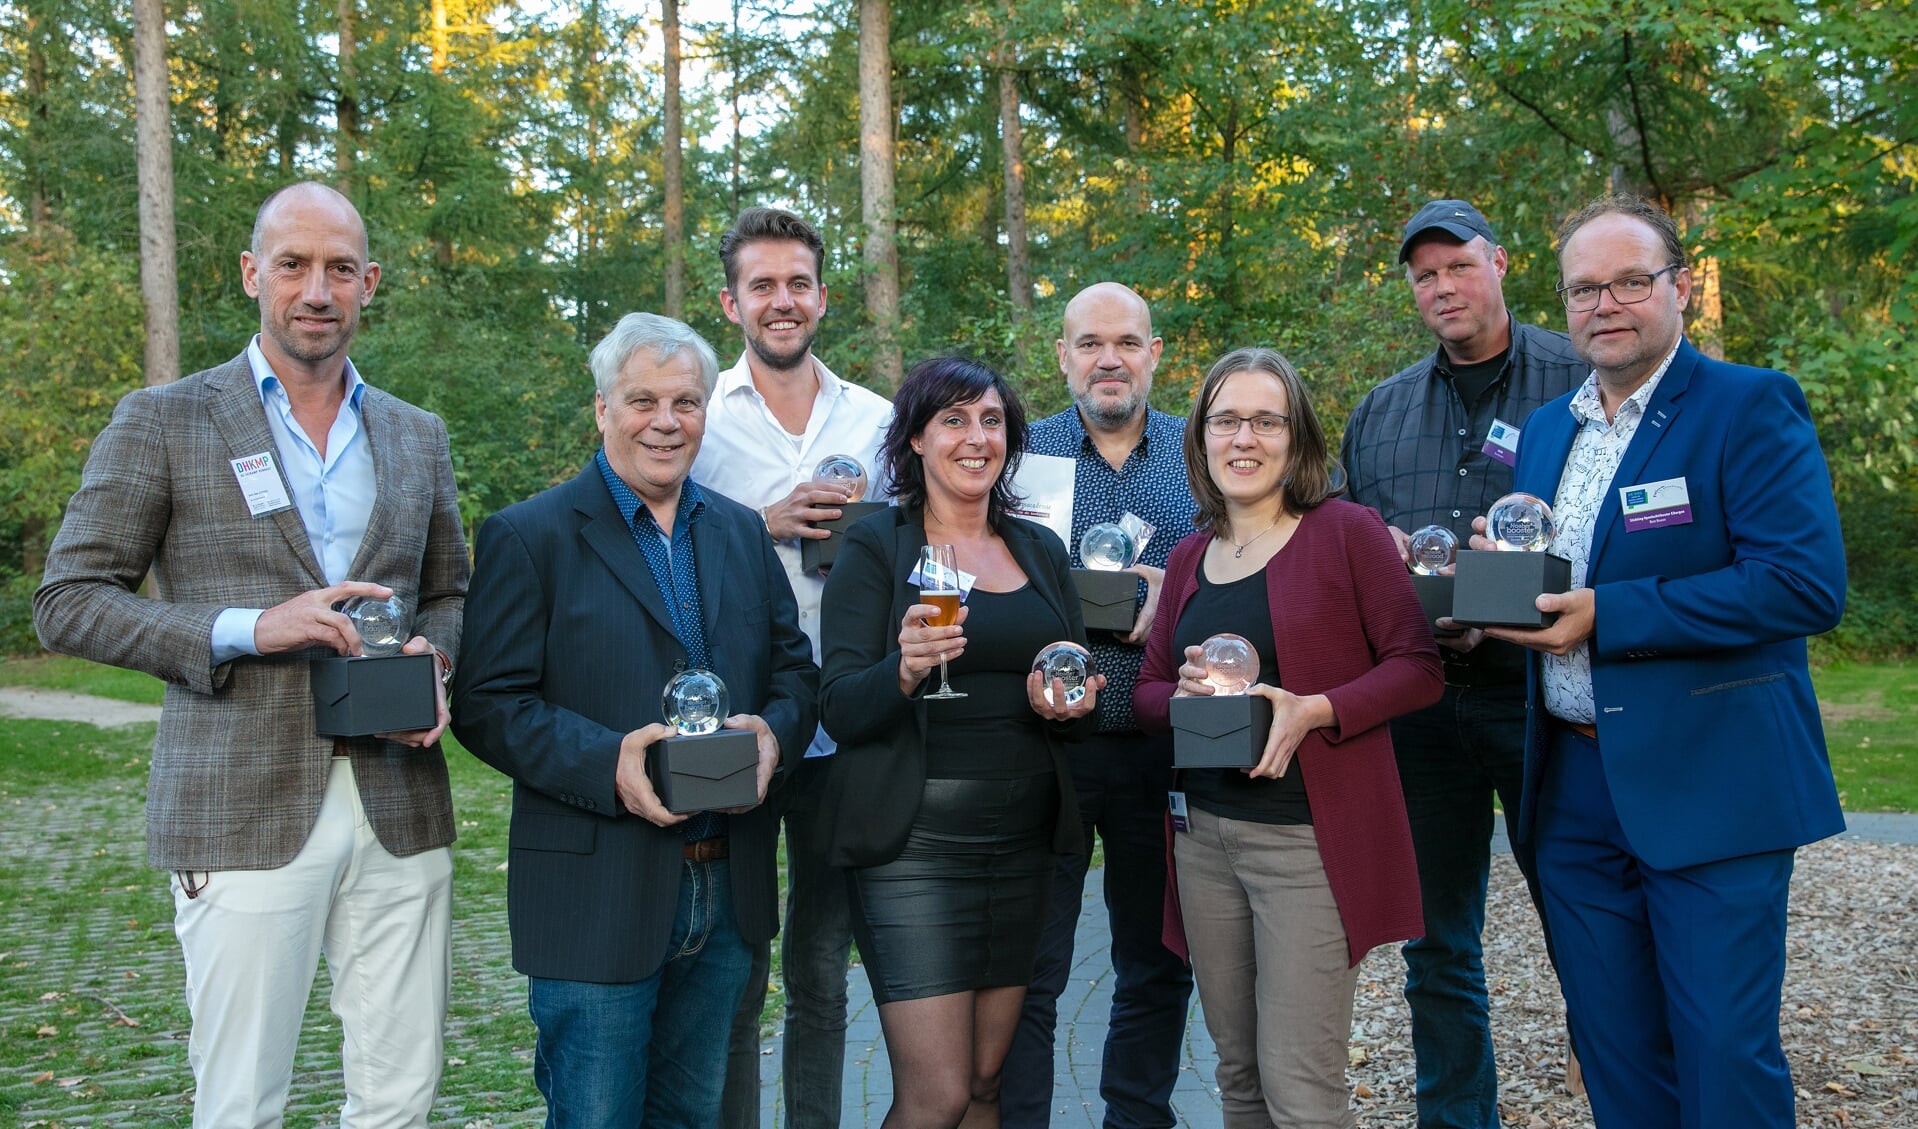 De winnaars van de Naober-Boost-award op een rij (Hartemink ontbreekt). Foto: Guido Bogert Fotografie